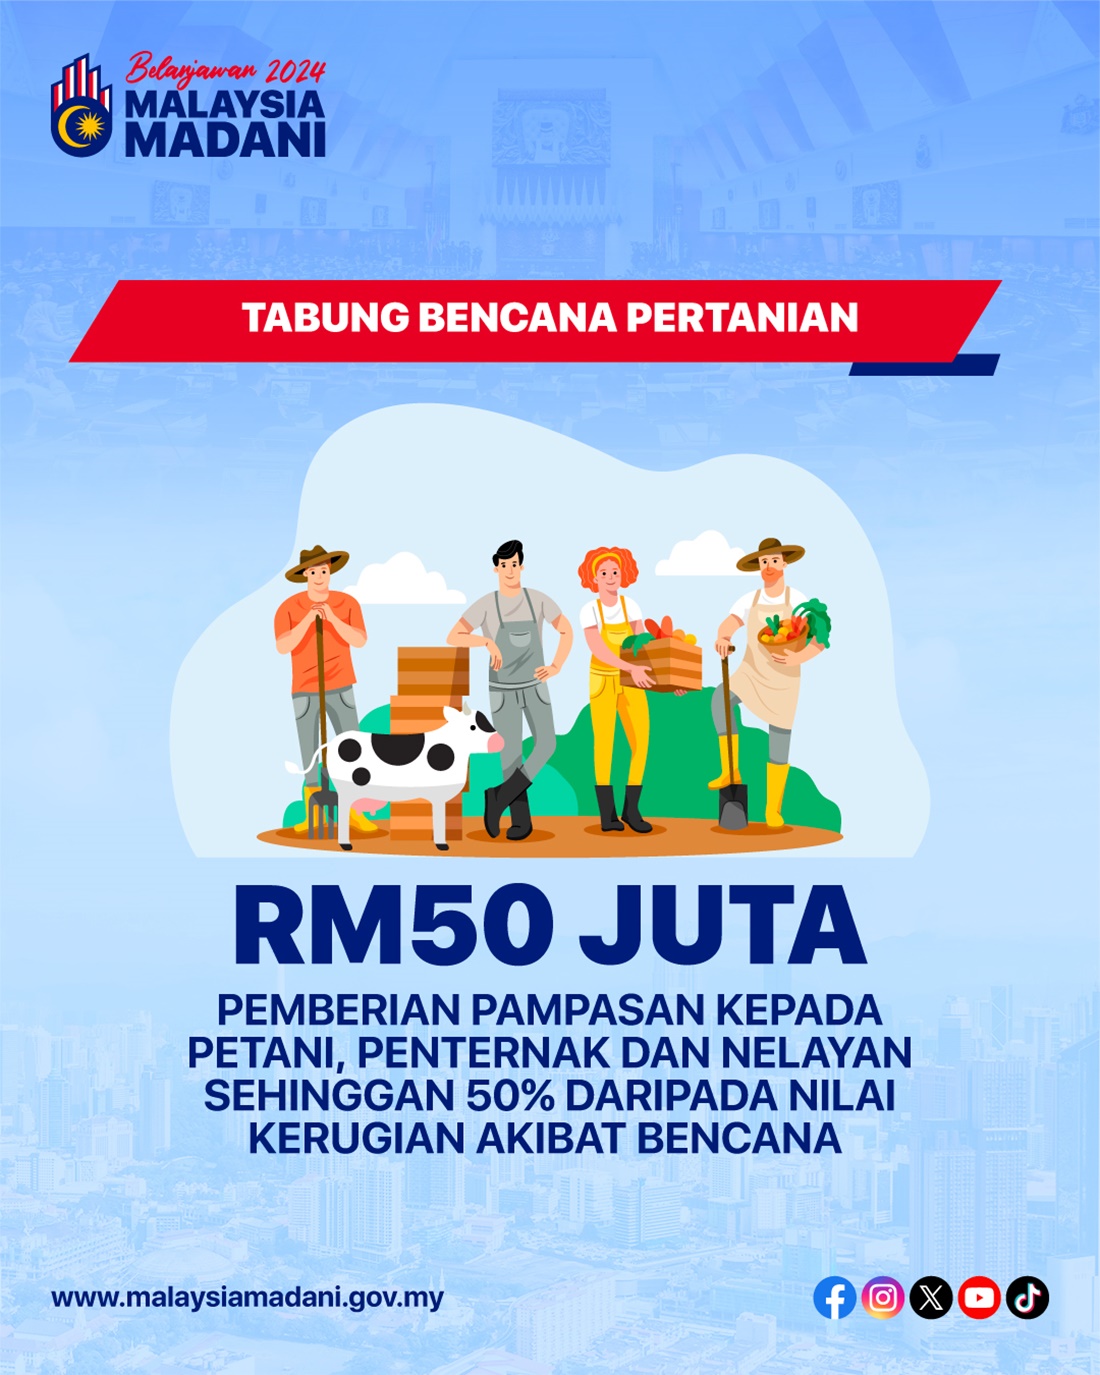 Copy of Bencana-Pertanian-RM50-Juta